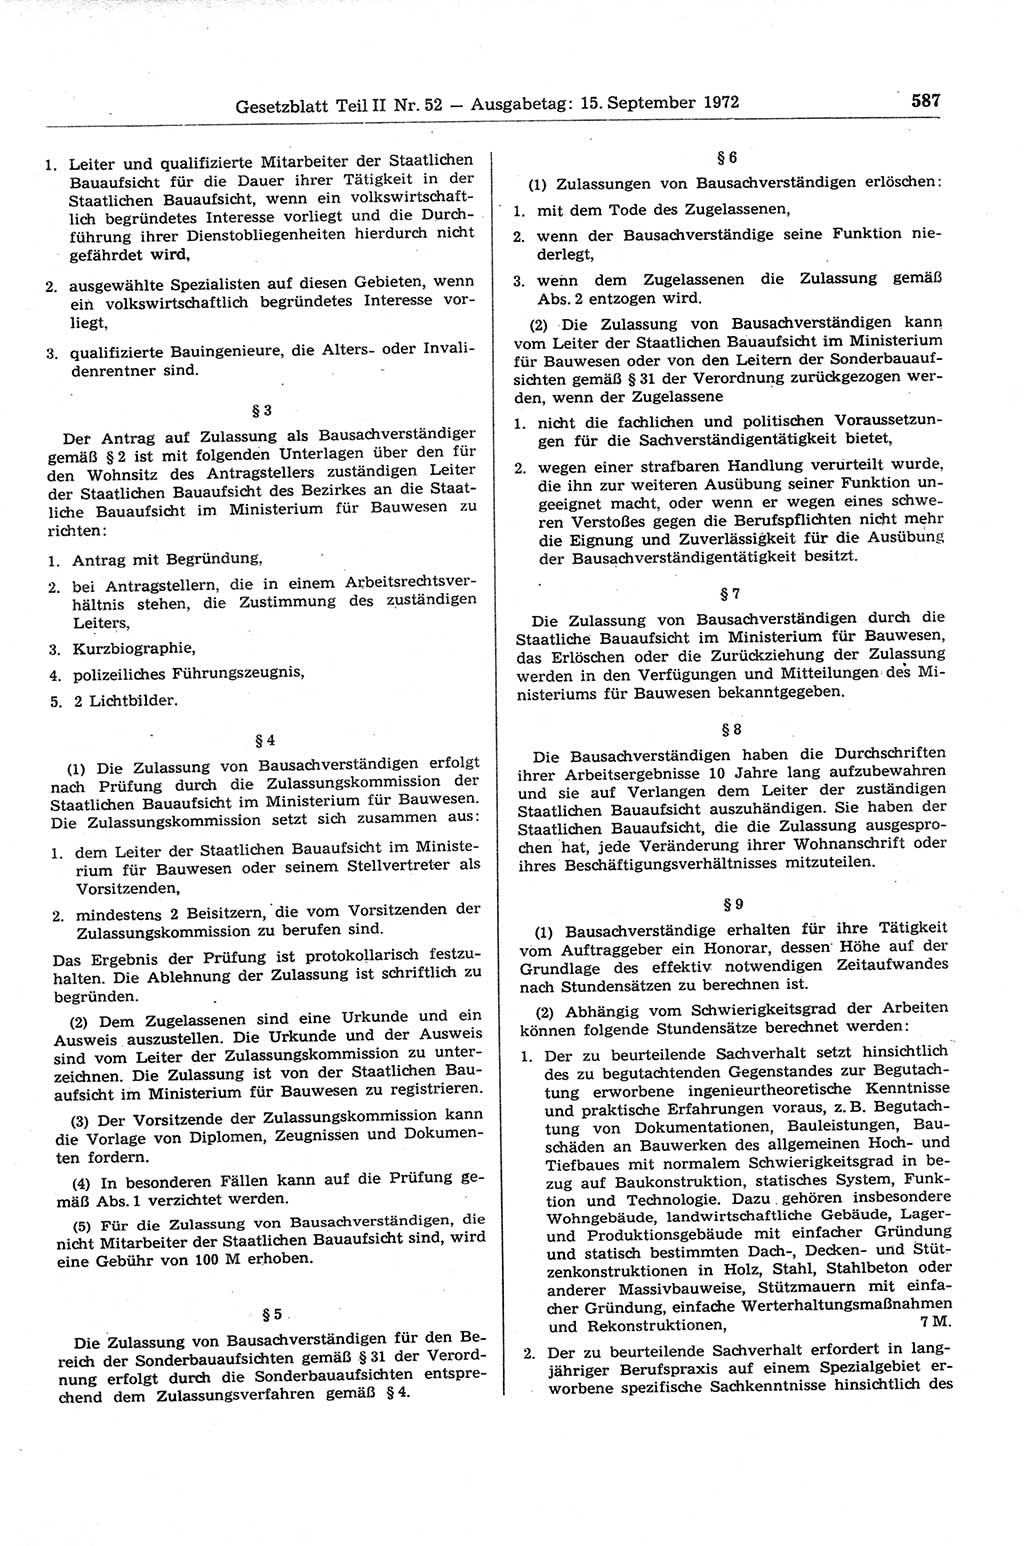 Gesetzblatt (GBl.) der Deutschen Demokratischen Republik (DDR) Teil ⅠⅠ 1972, Seite 587 (GBl. DDR ⅠⅠ 1972, S. 587)